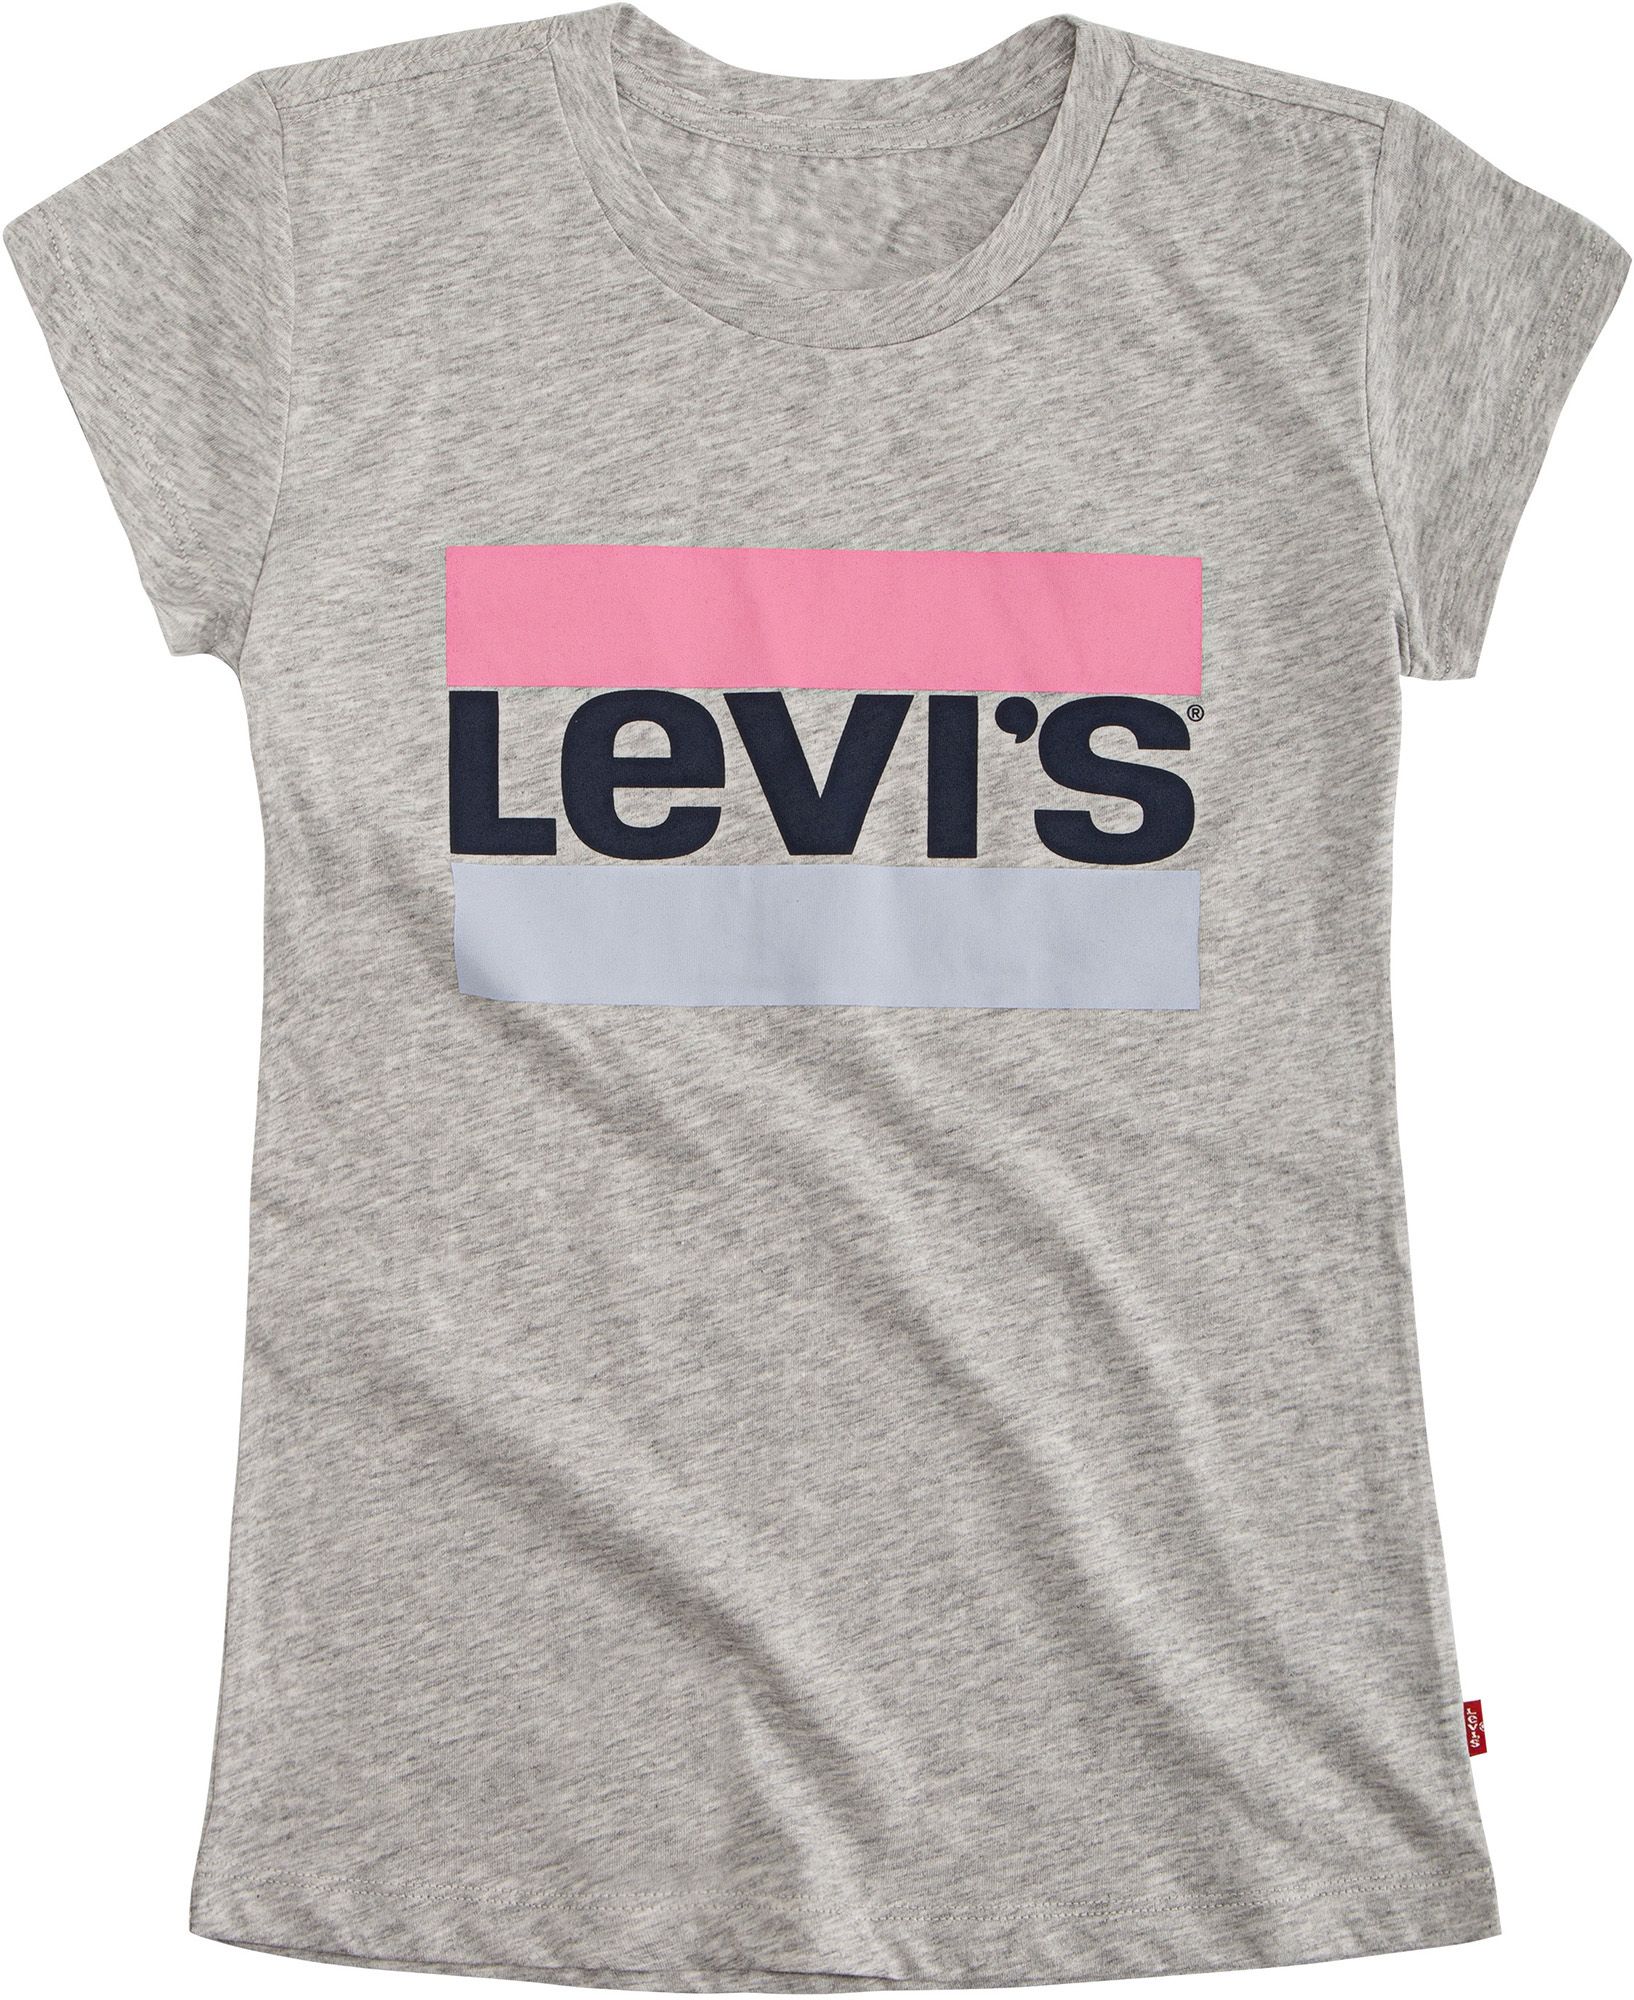 levis girls shirt